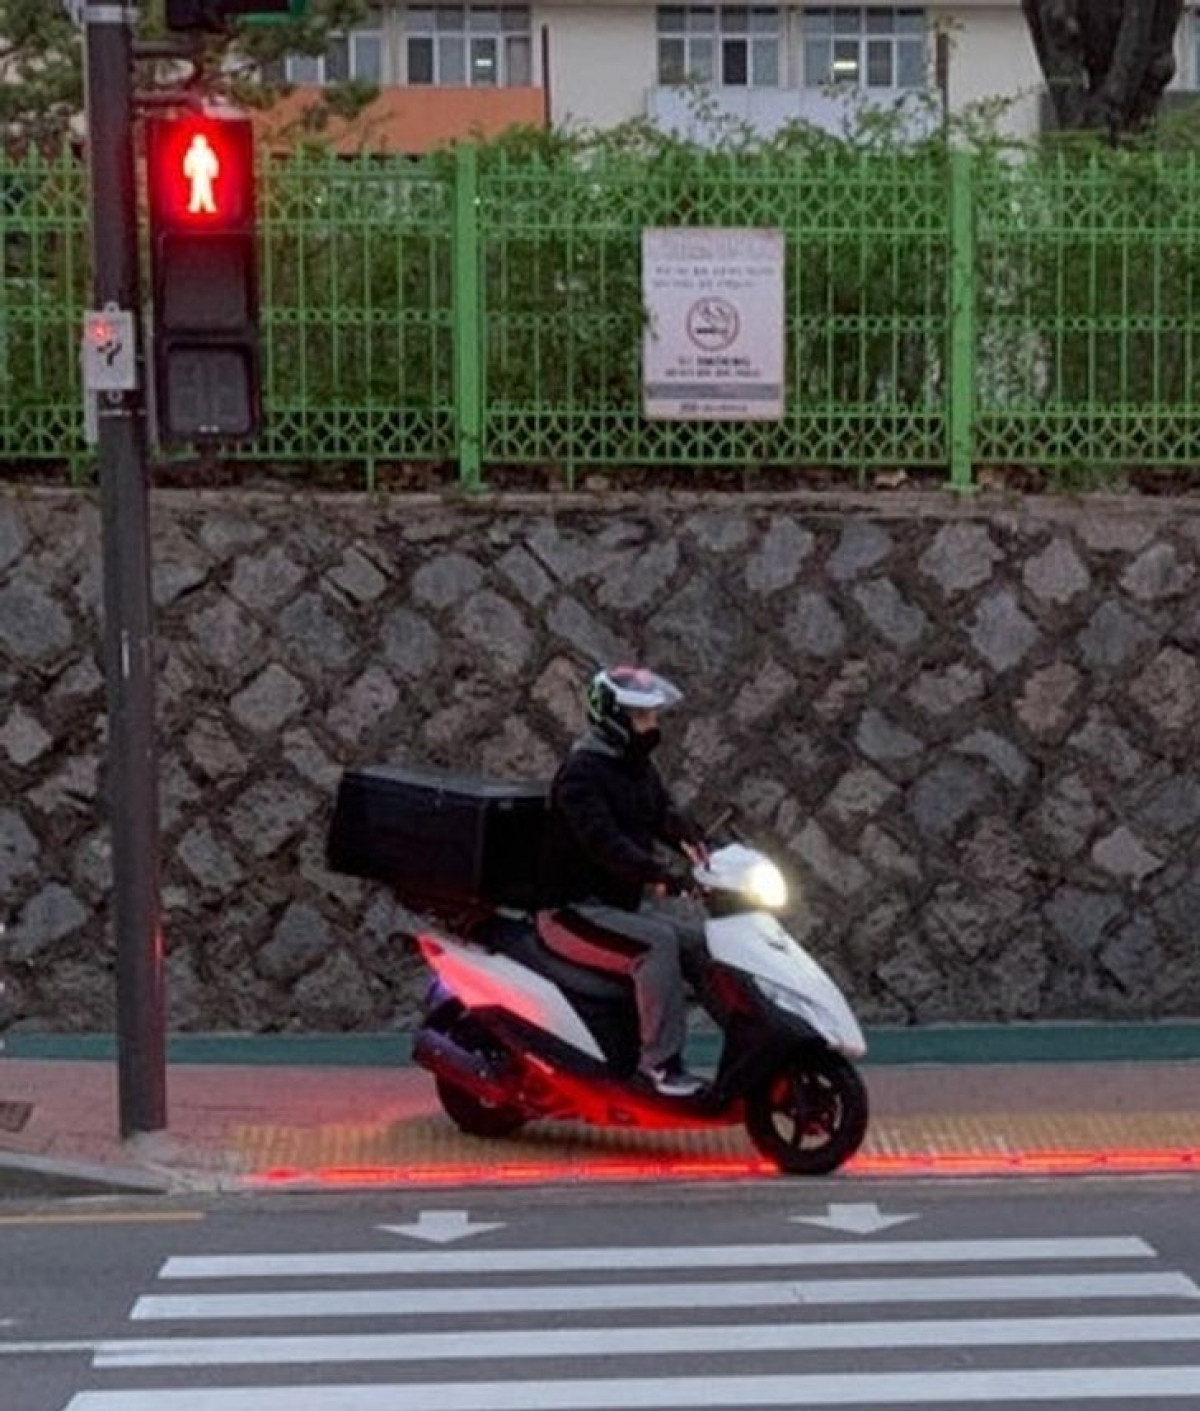 Trong một thế giới mà chúng ta dành ngày càng nhiều thời gian vào màn hình điện thoại, các nhà quản lý đô thị tại Hàn Quốc đã nghĩ ra một sáng kiến giúp các cư dân của thế giới hiện đại không bị lỡ đèn tín hiệu giao thông trong khi đang sử dụng thiết bị di động. Theo đó, các cột đèn giao thông có thêm bóng đèn ở thấp gần mặt đường để khi người tham gia giao thông cúi mặt vào màn hình thiết bị di động, họ có thể dễ dàng nhận biết được khi nào đèn tín hiệu chuyển từ đỏ sang xanh để khởi hành.